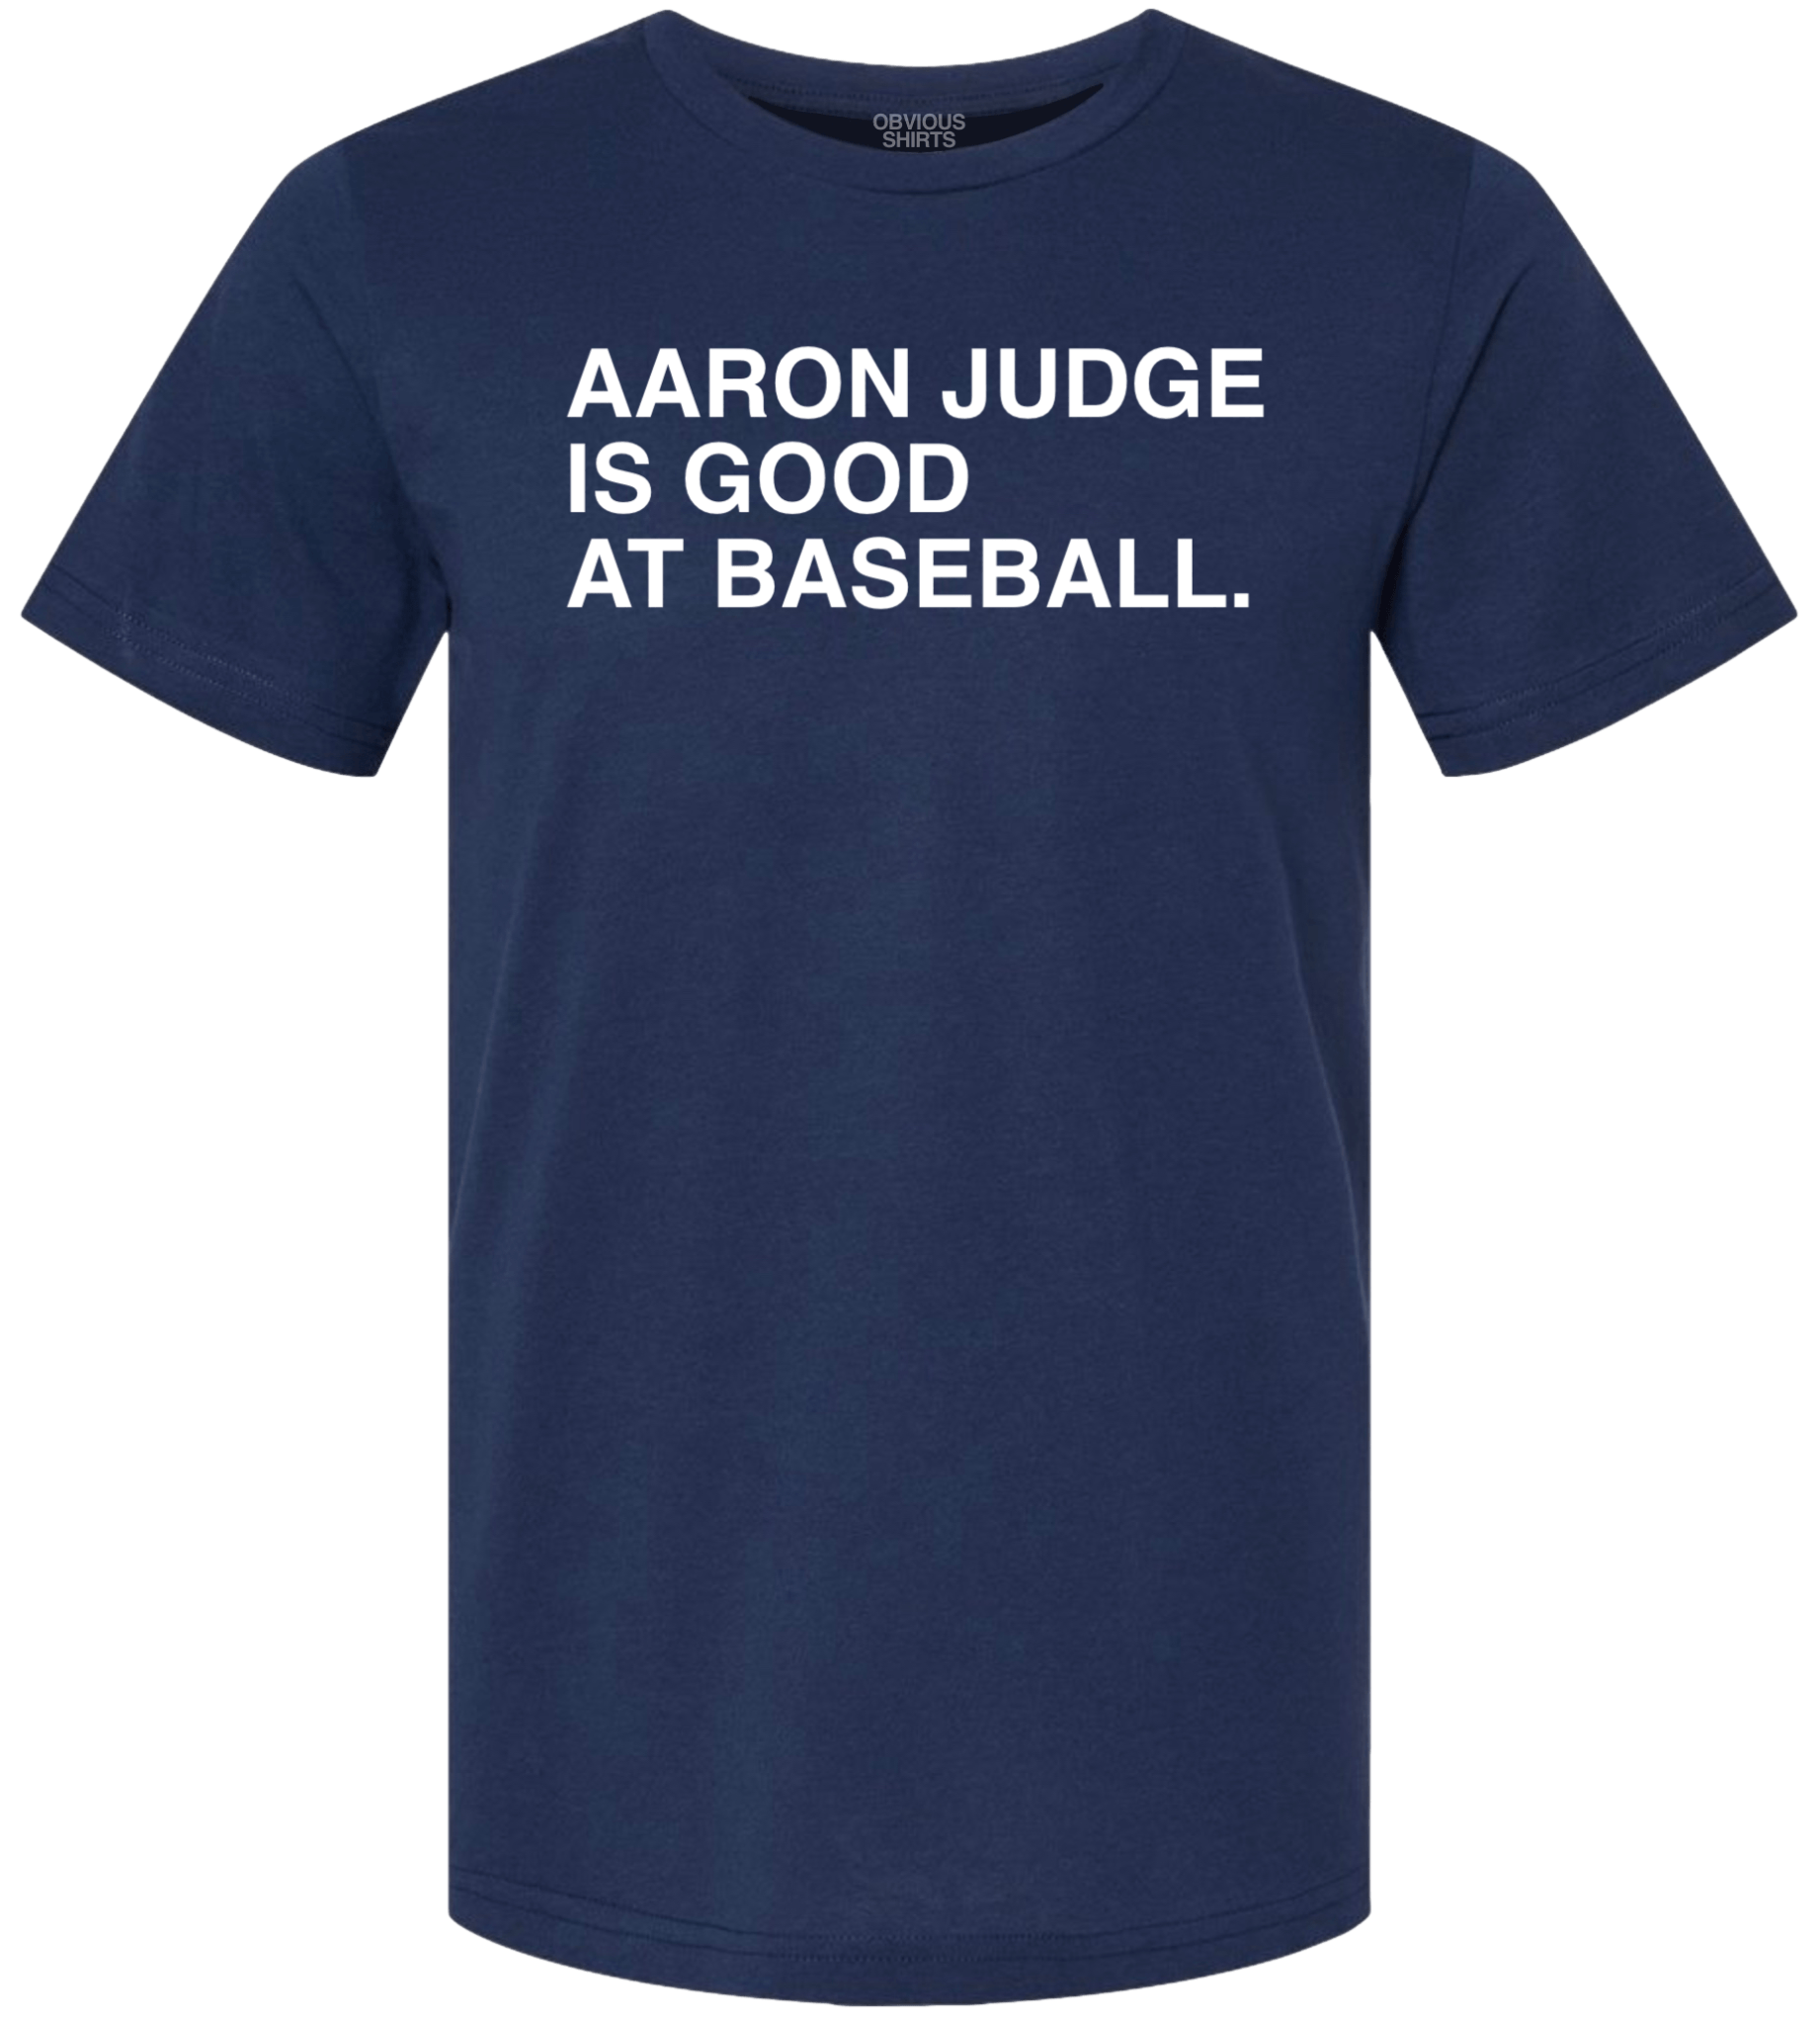 AARON JUDGE IS GOOD AT BASEBALL.